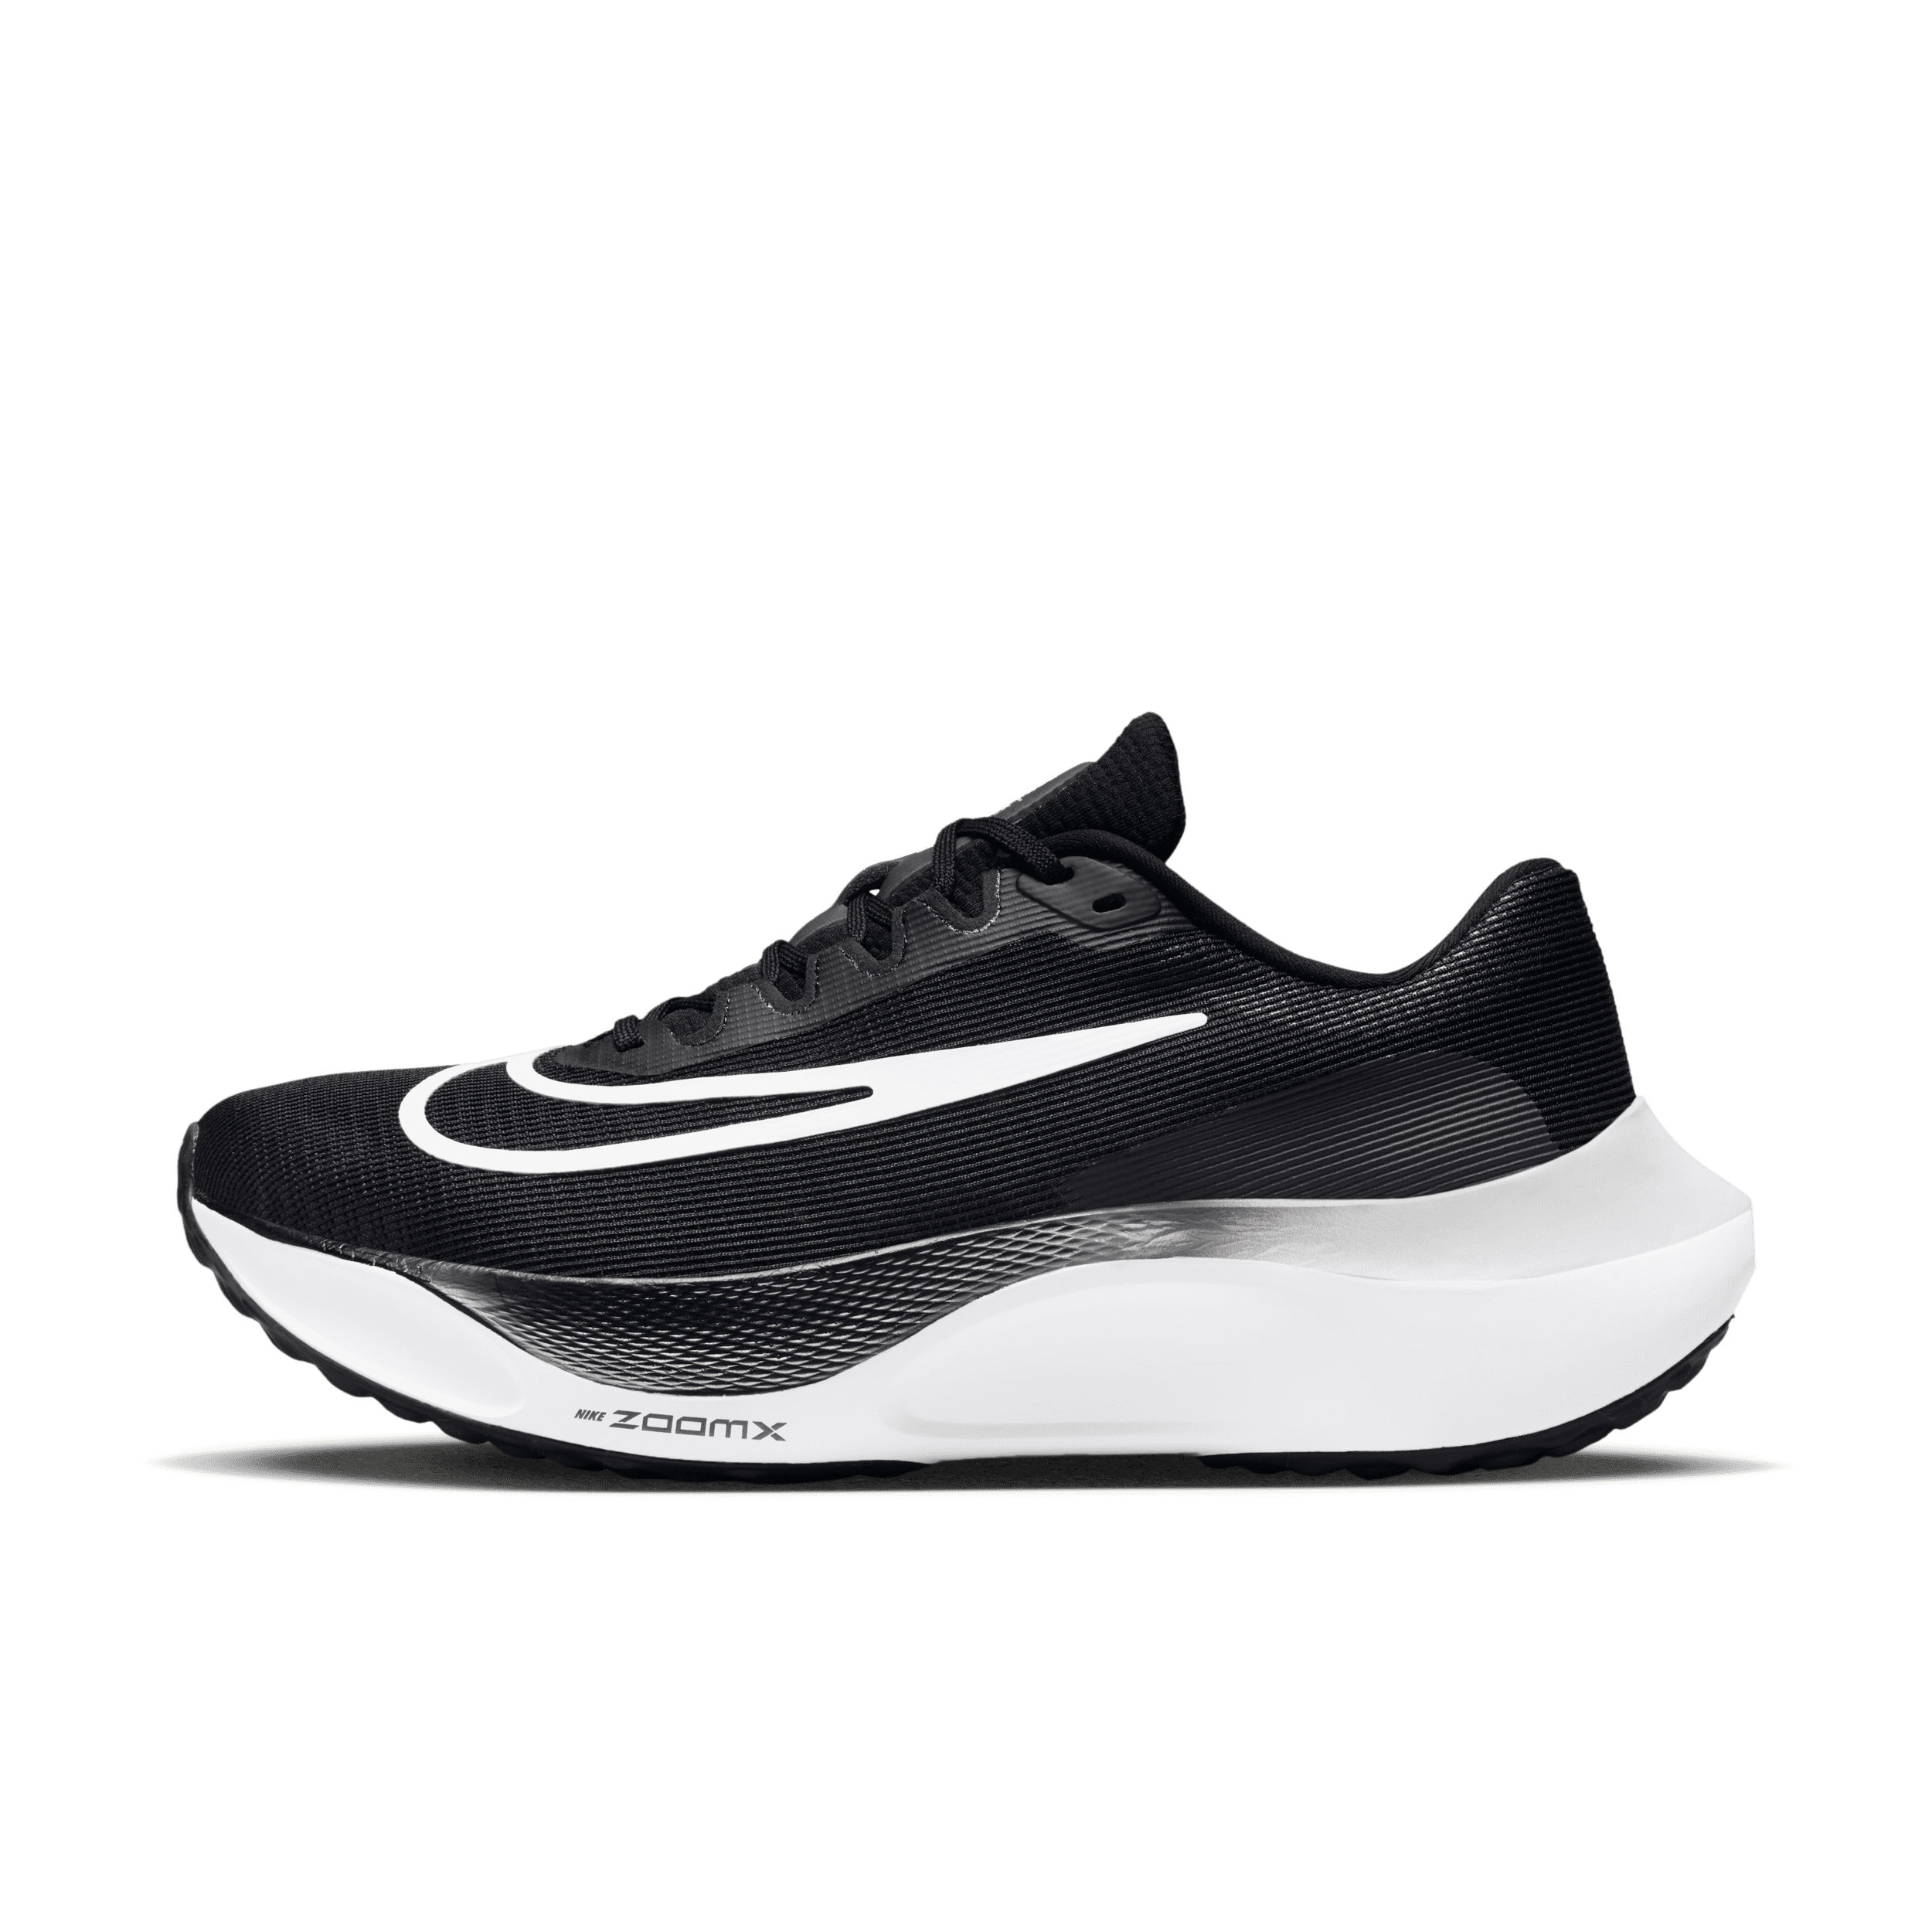 Incentivo Corteza Visible Zoom Fly 5Men's Road Running Shoes in KSA. Nike SA